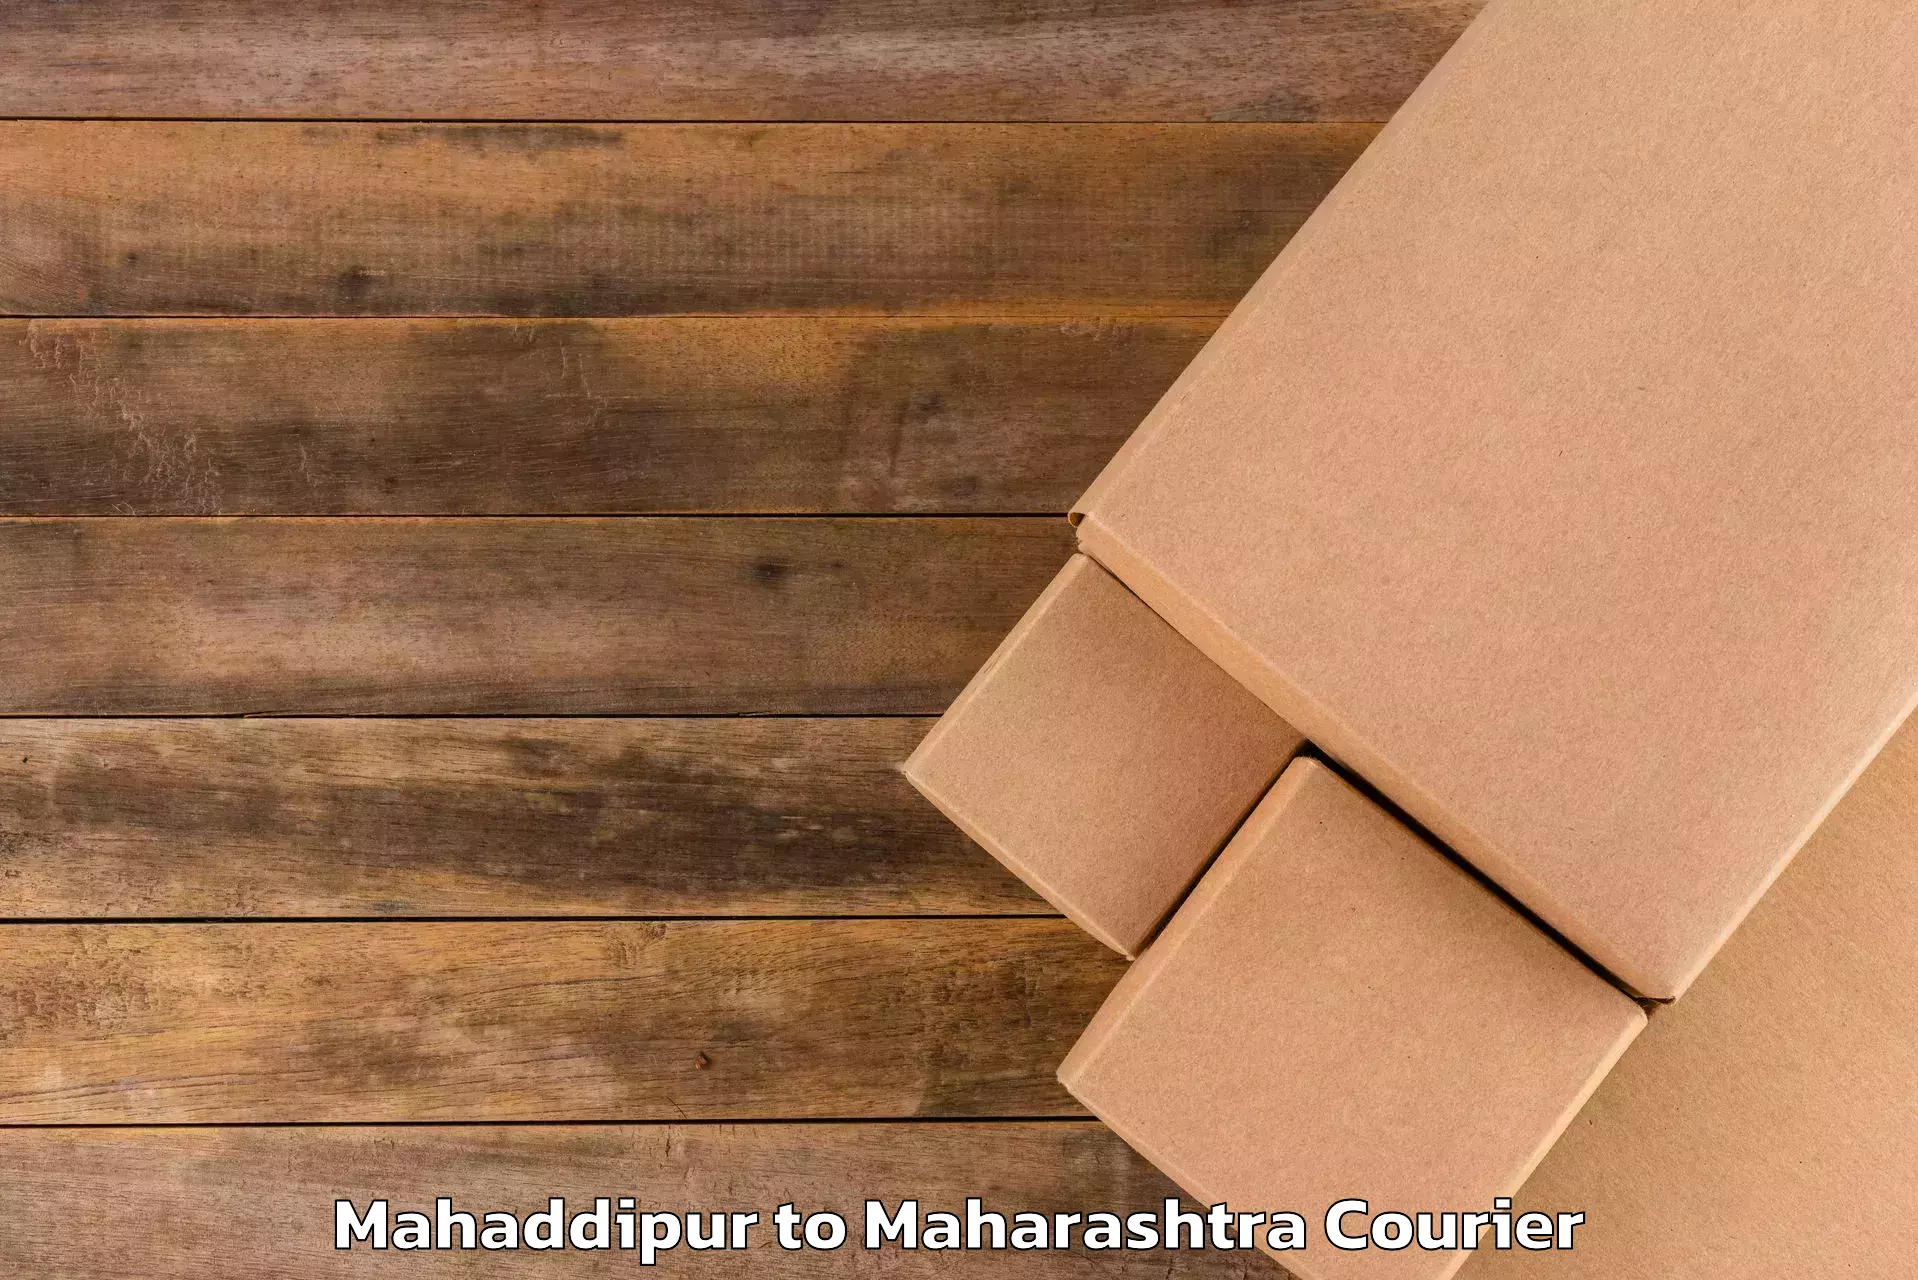 Luggage transport solutions Mahaddipur to Maharashtra